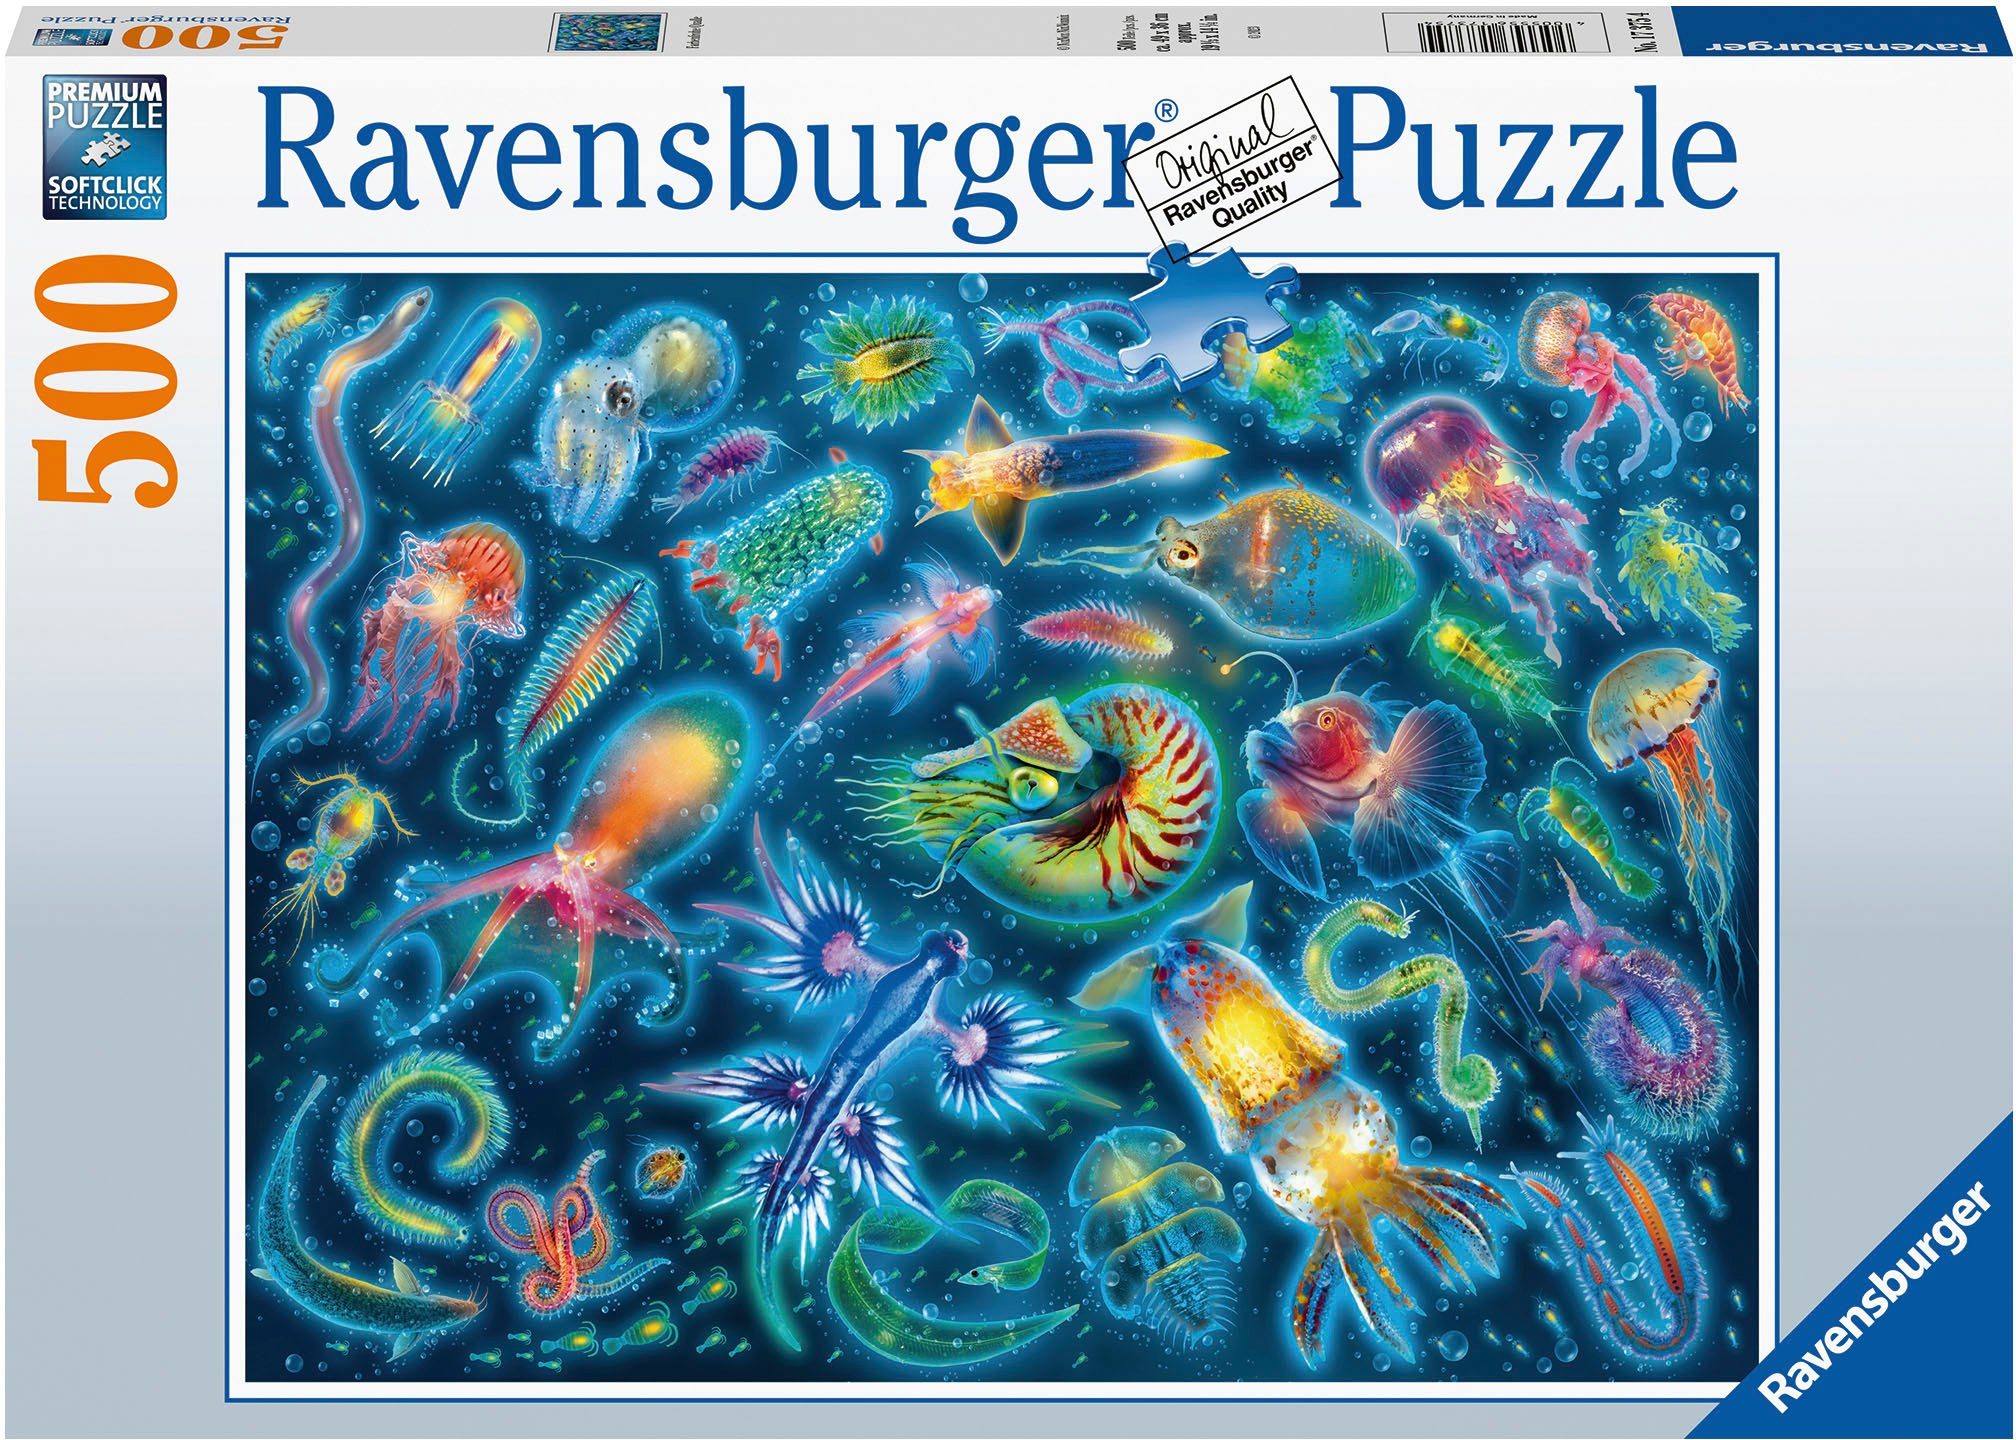 Ravensburger Puzzle Farbenfrohe Quallen, 500 Puzzleteile, Made in Germany; FSC®- schützt Wald - weltweit